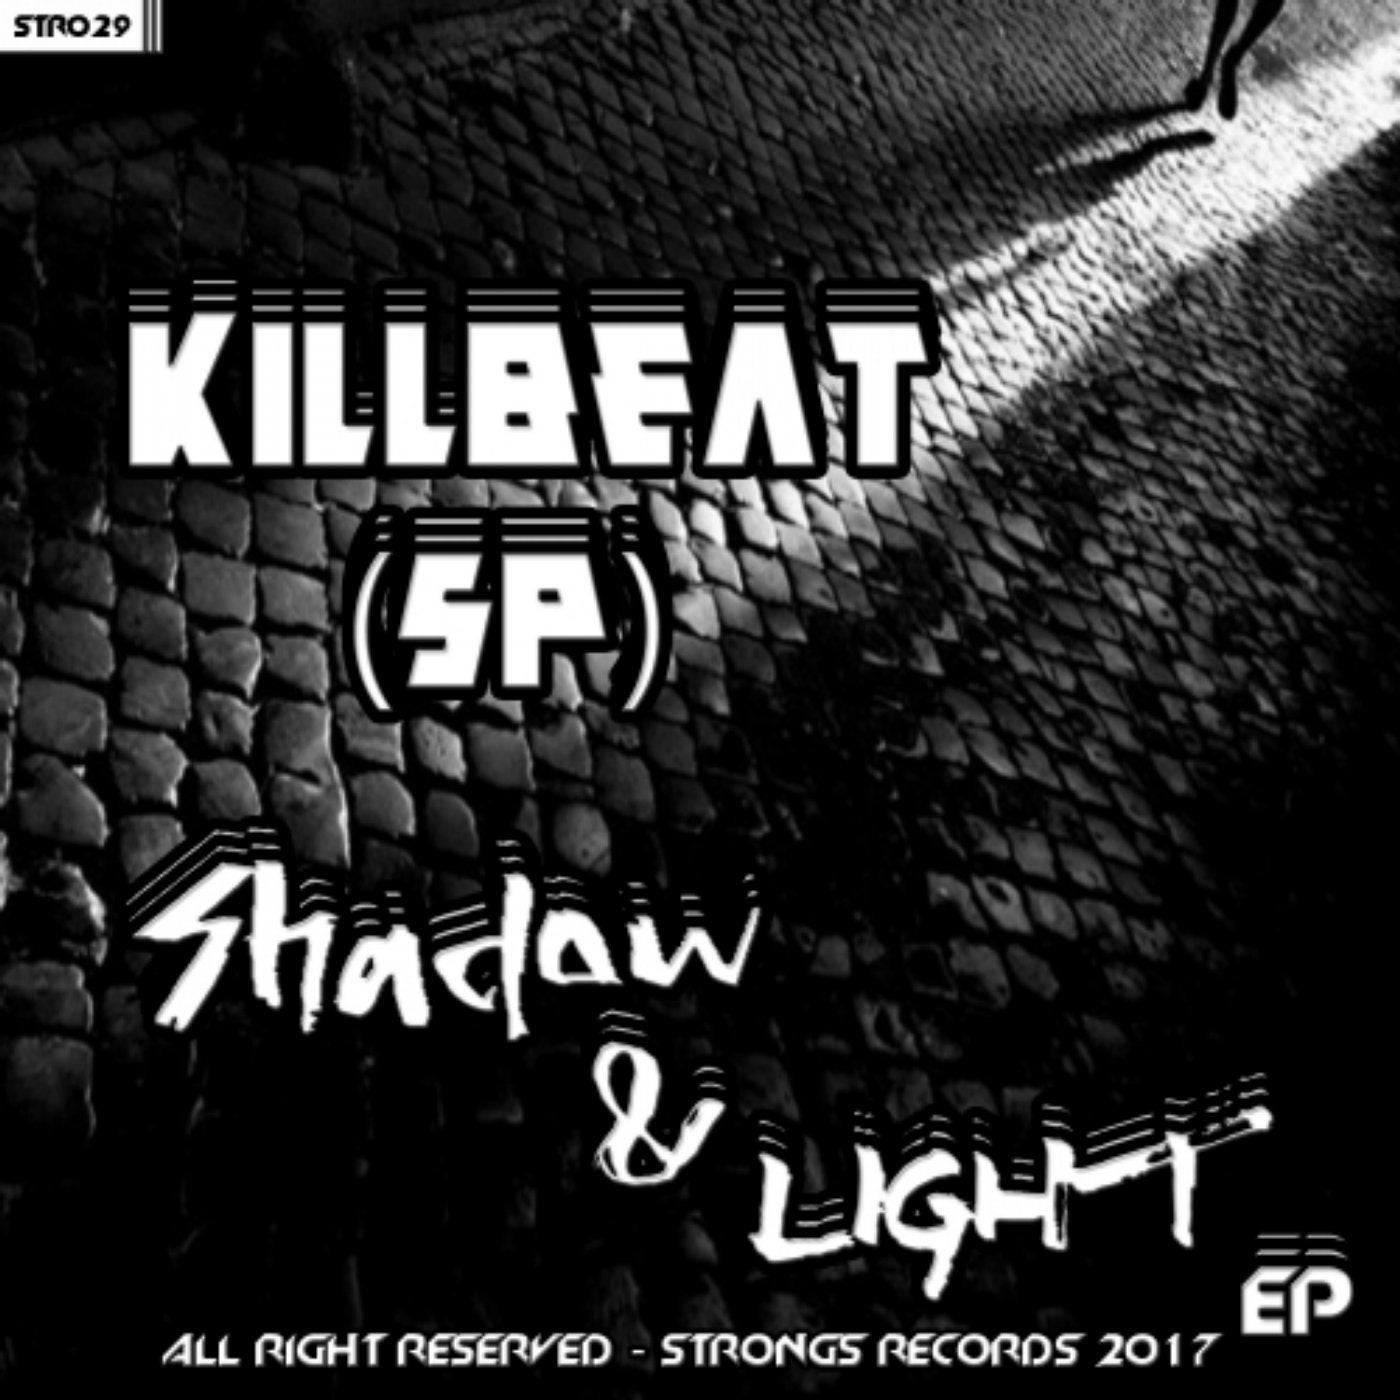 Shadow & Light EP